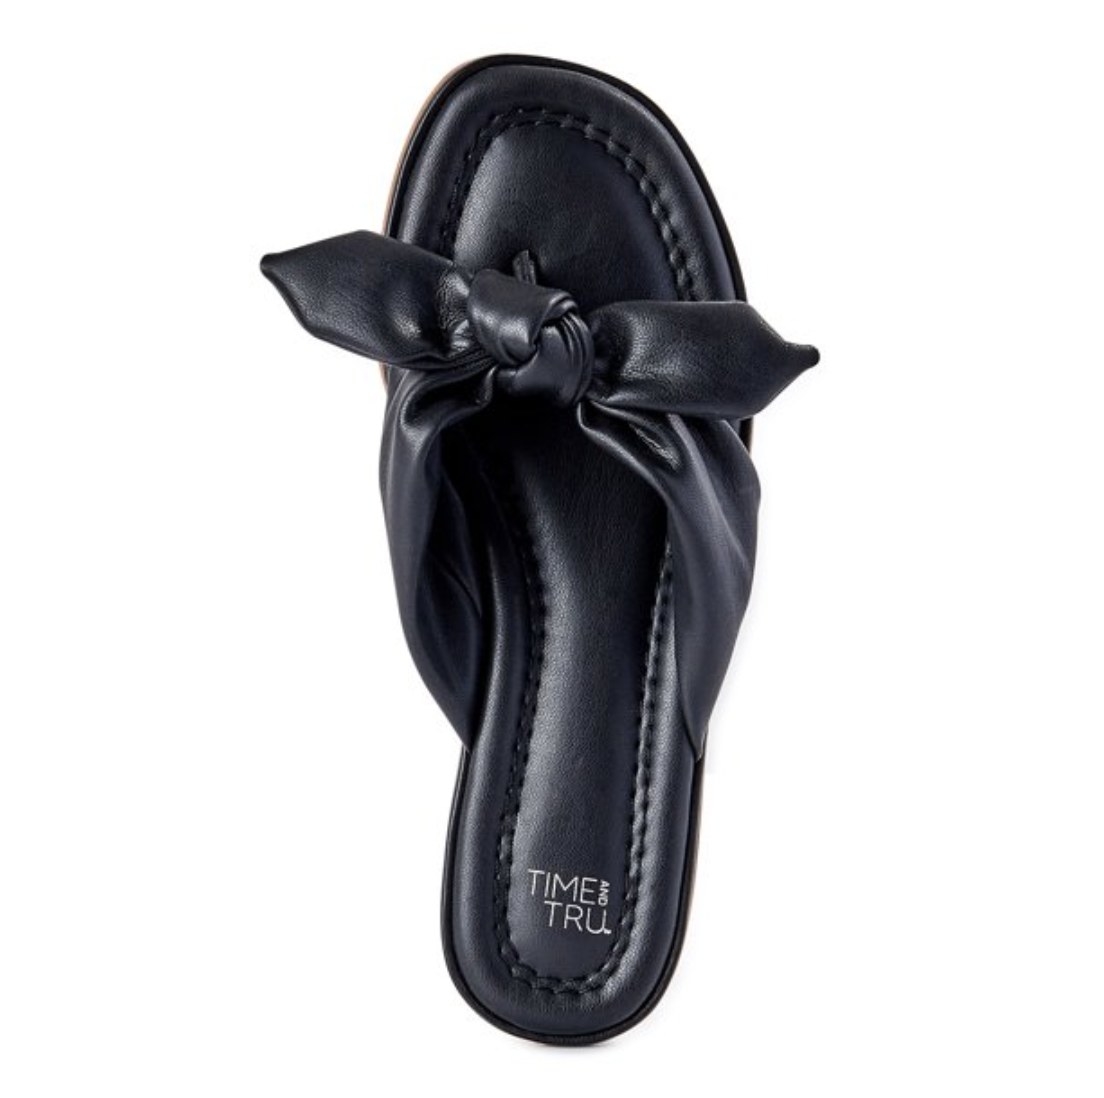 A black sandal